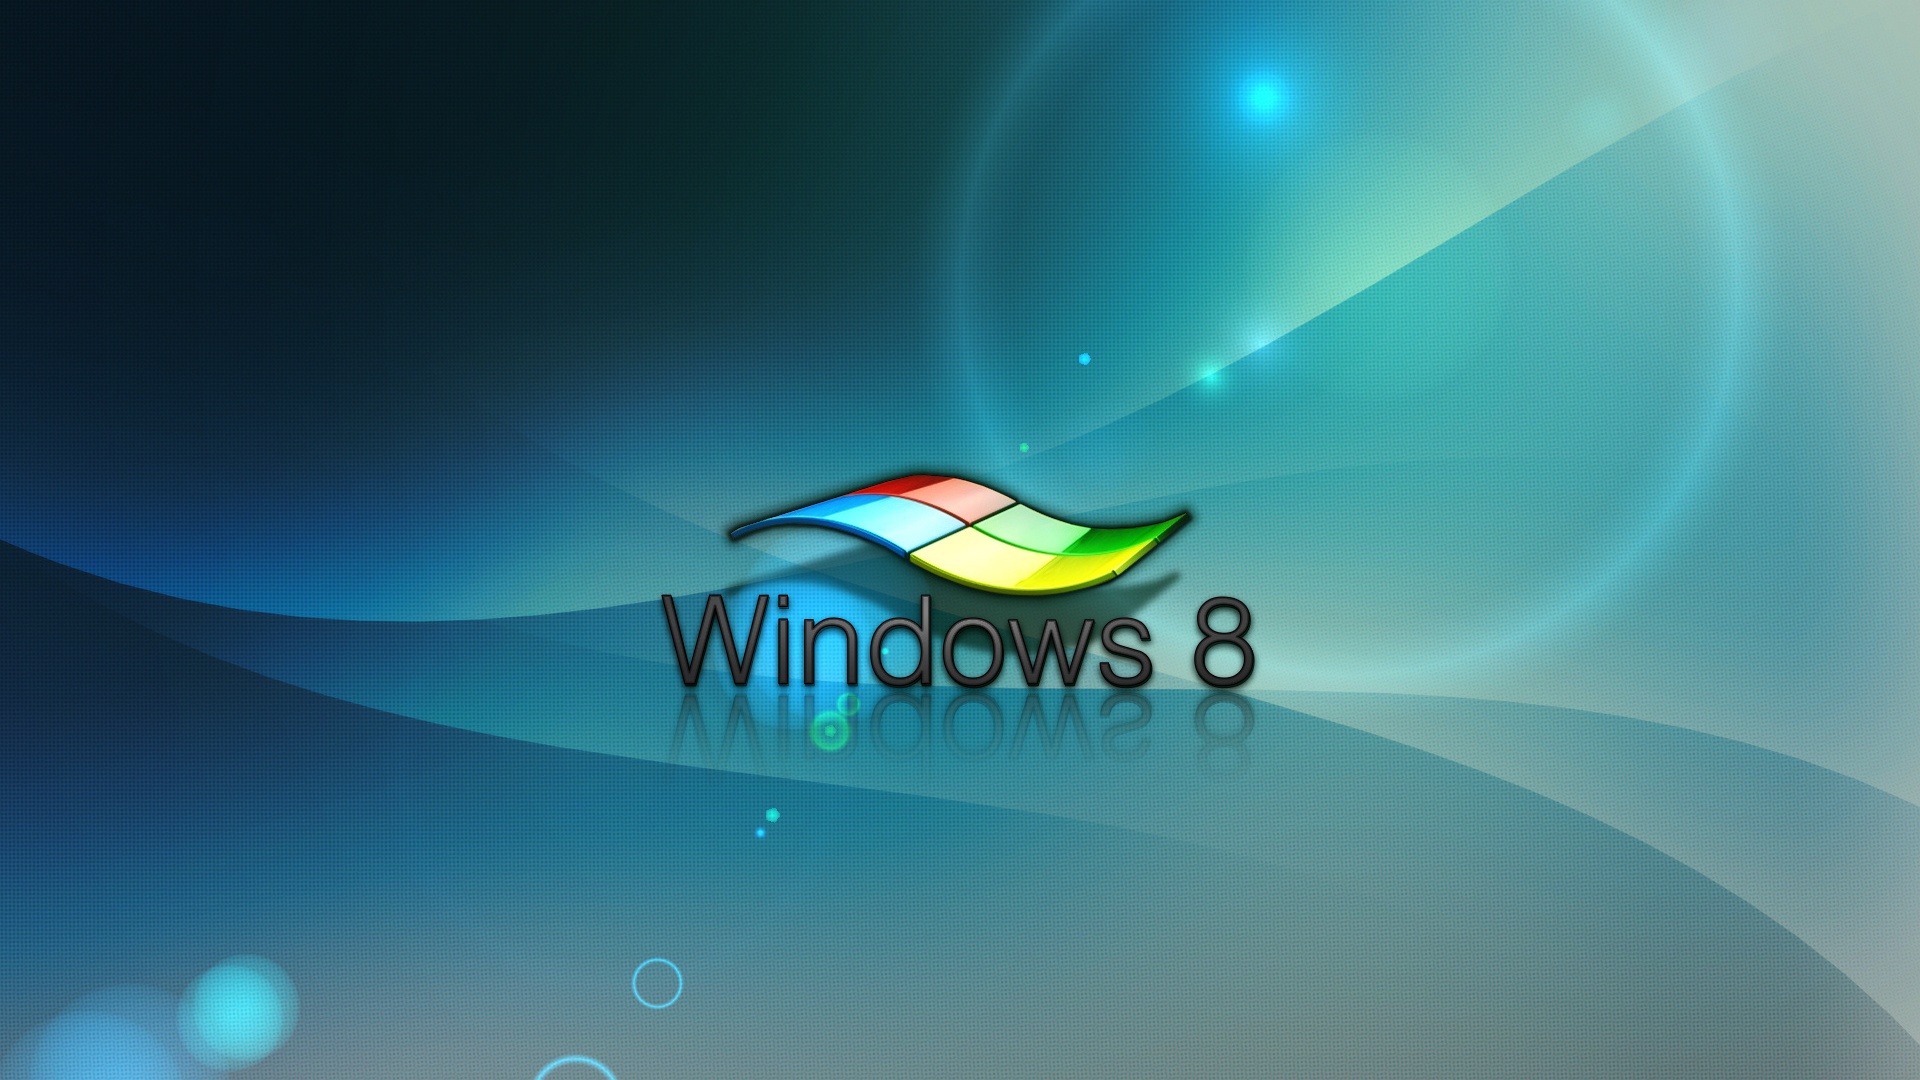 Windows 8 Wallpaper Hd 3d For Desktop